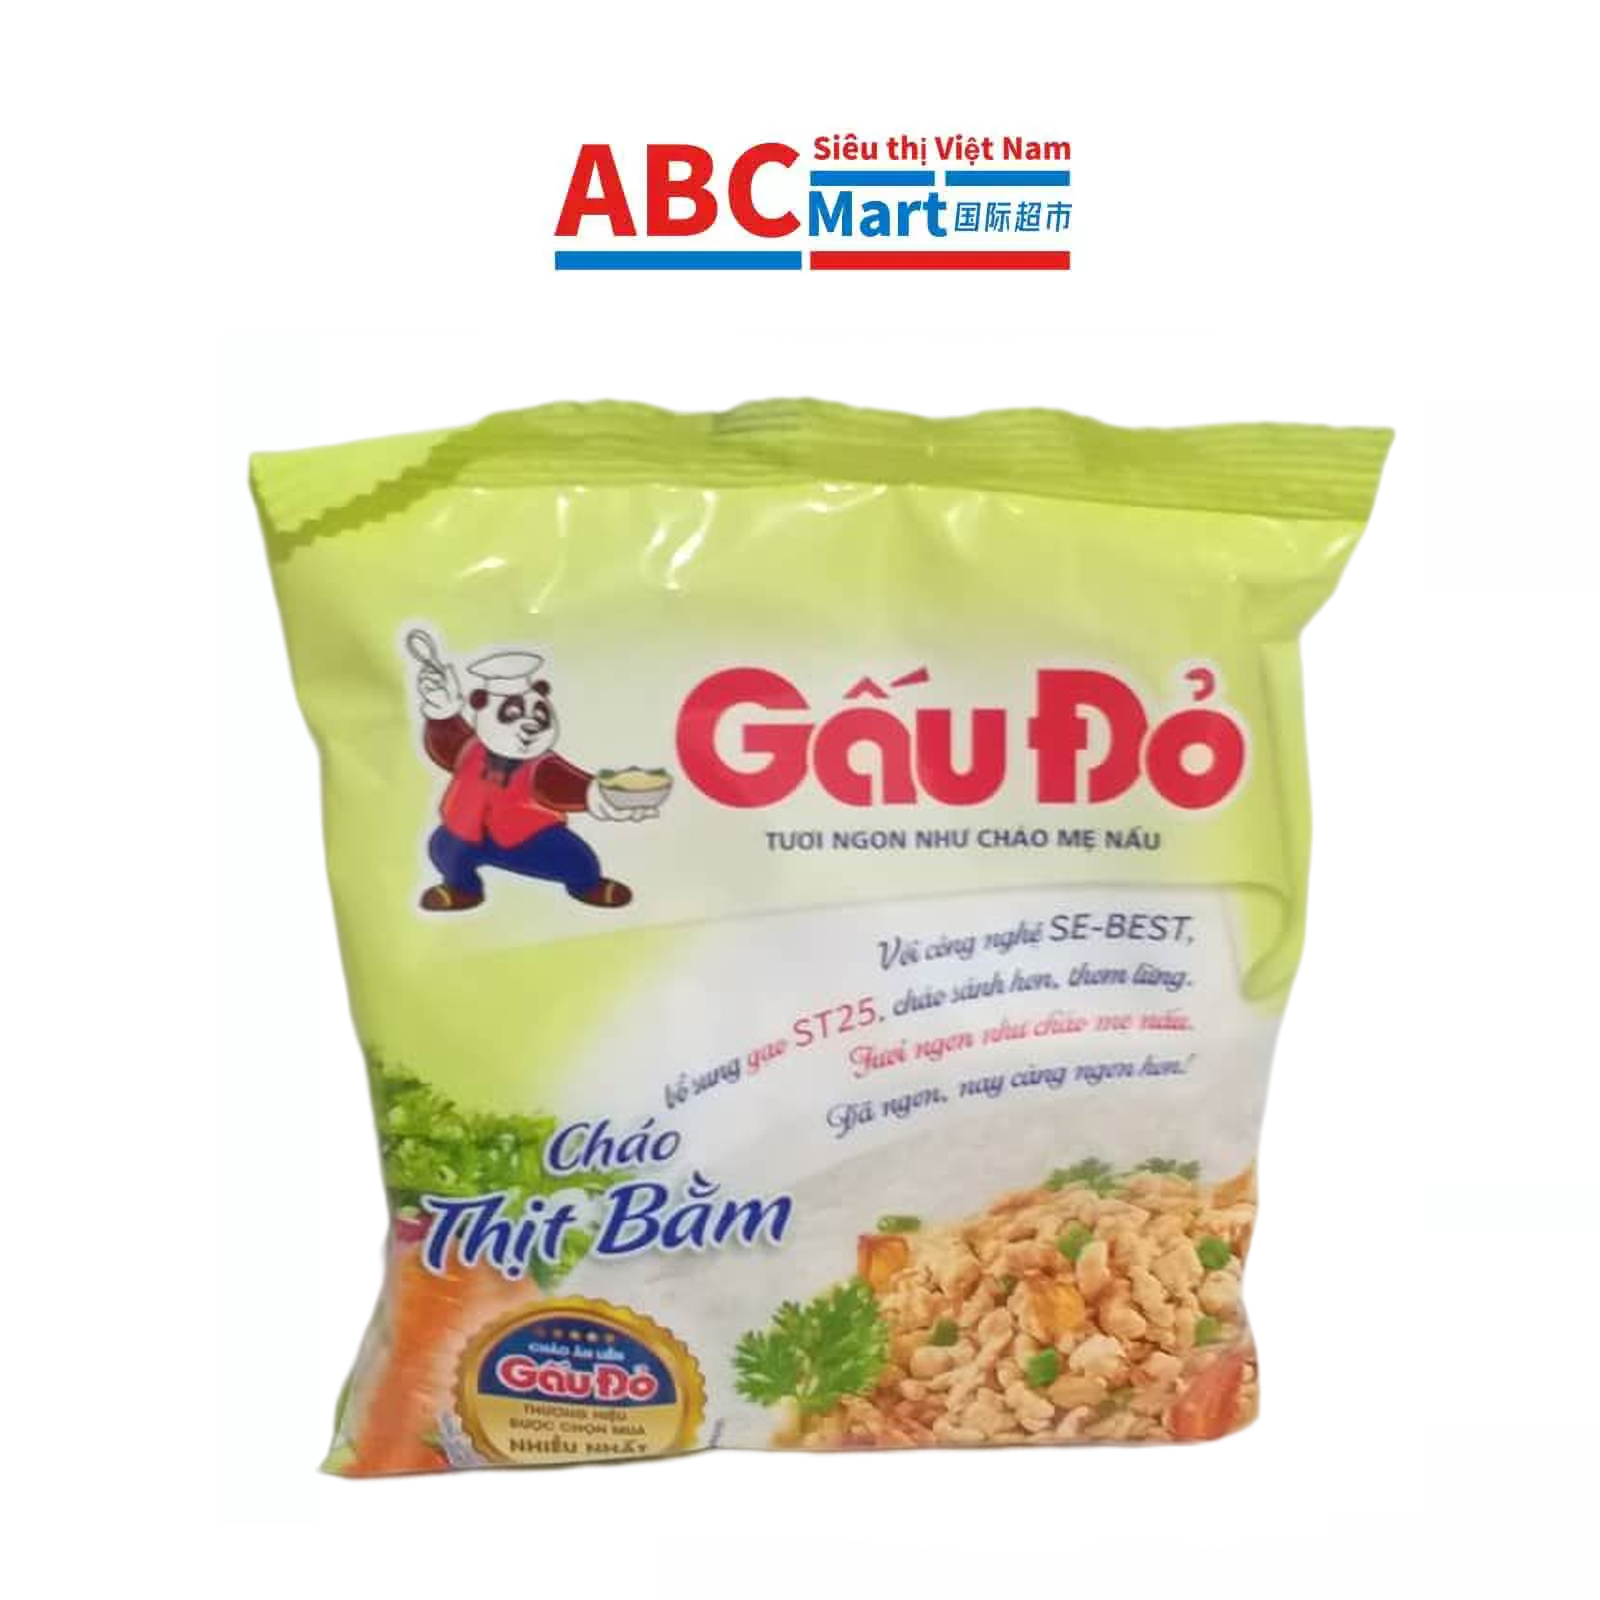 【Việt Nam- Cháo gấu đỏ 50g 】小熊粥 肉粥方便速食粥-ABCMart 国际超市